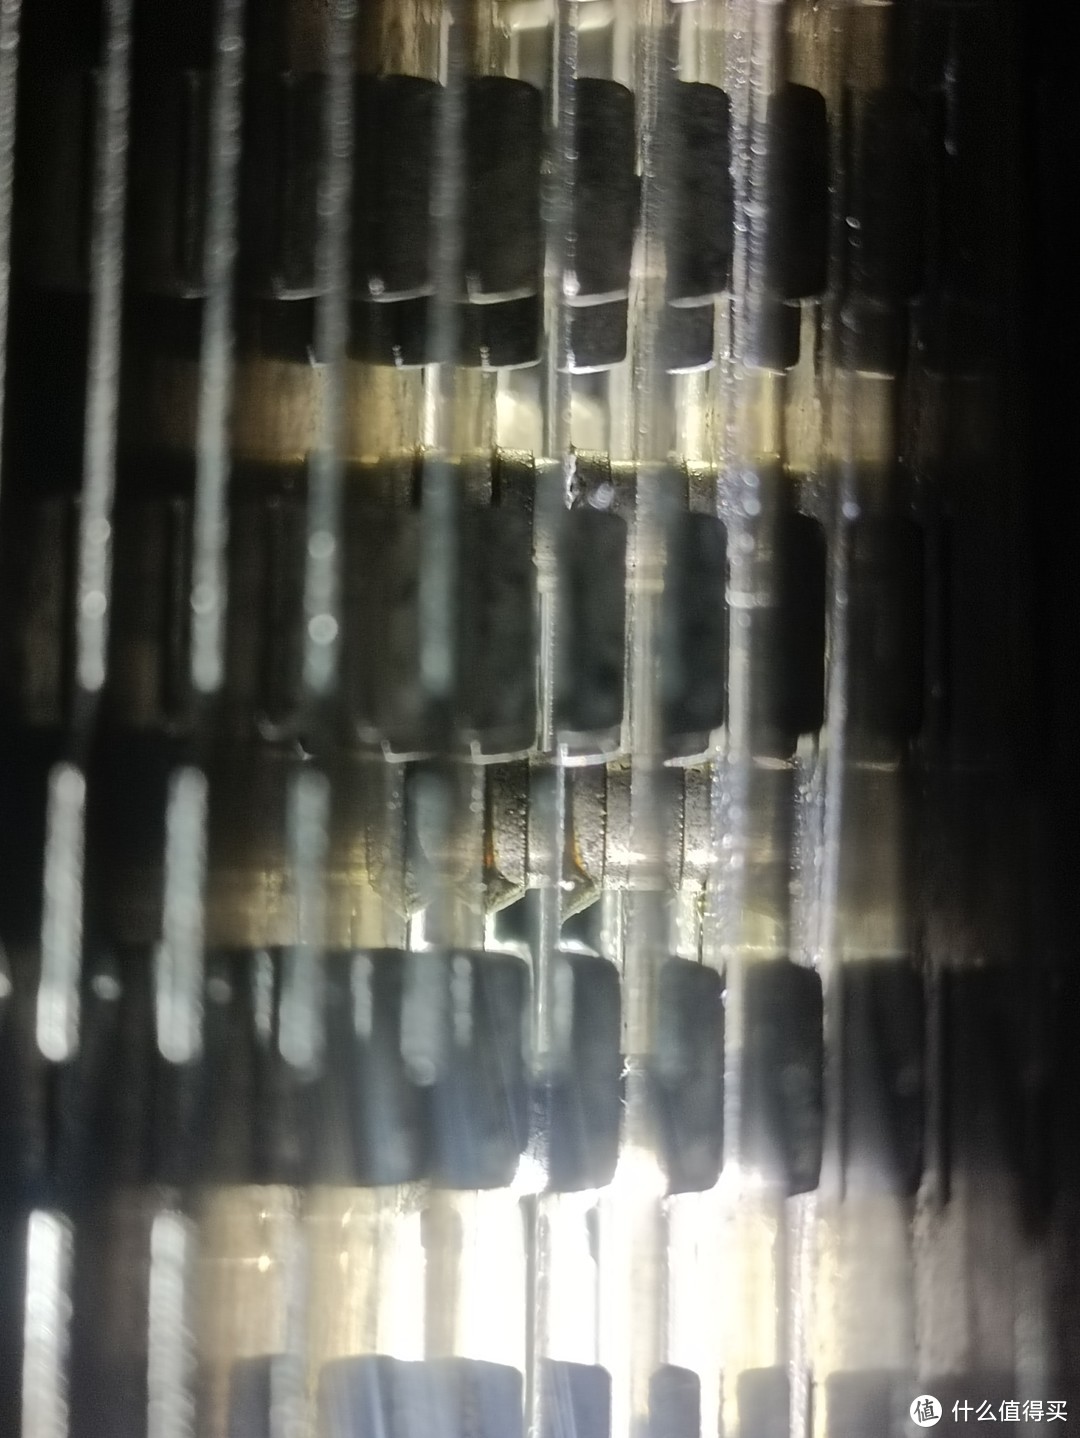 焊锡大量堆积在回流焊孔处，并没有连接鳍片与热管